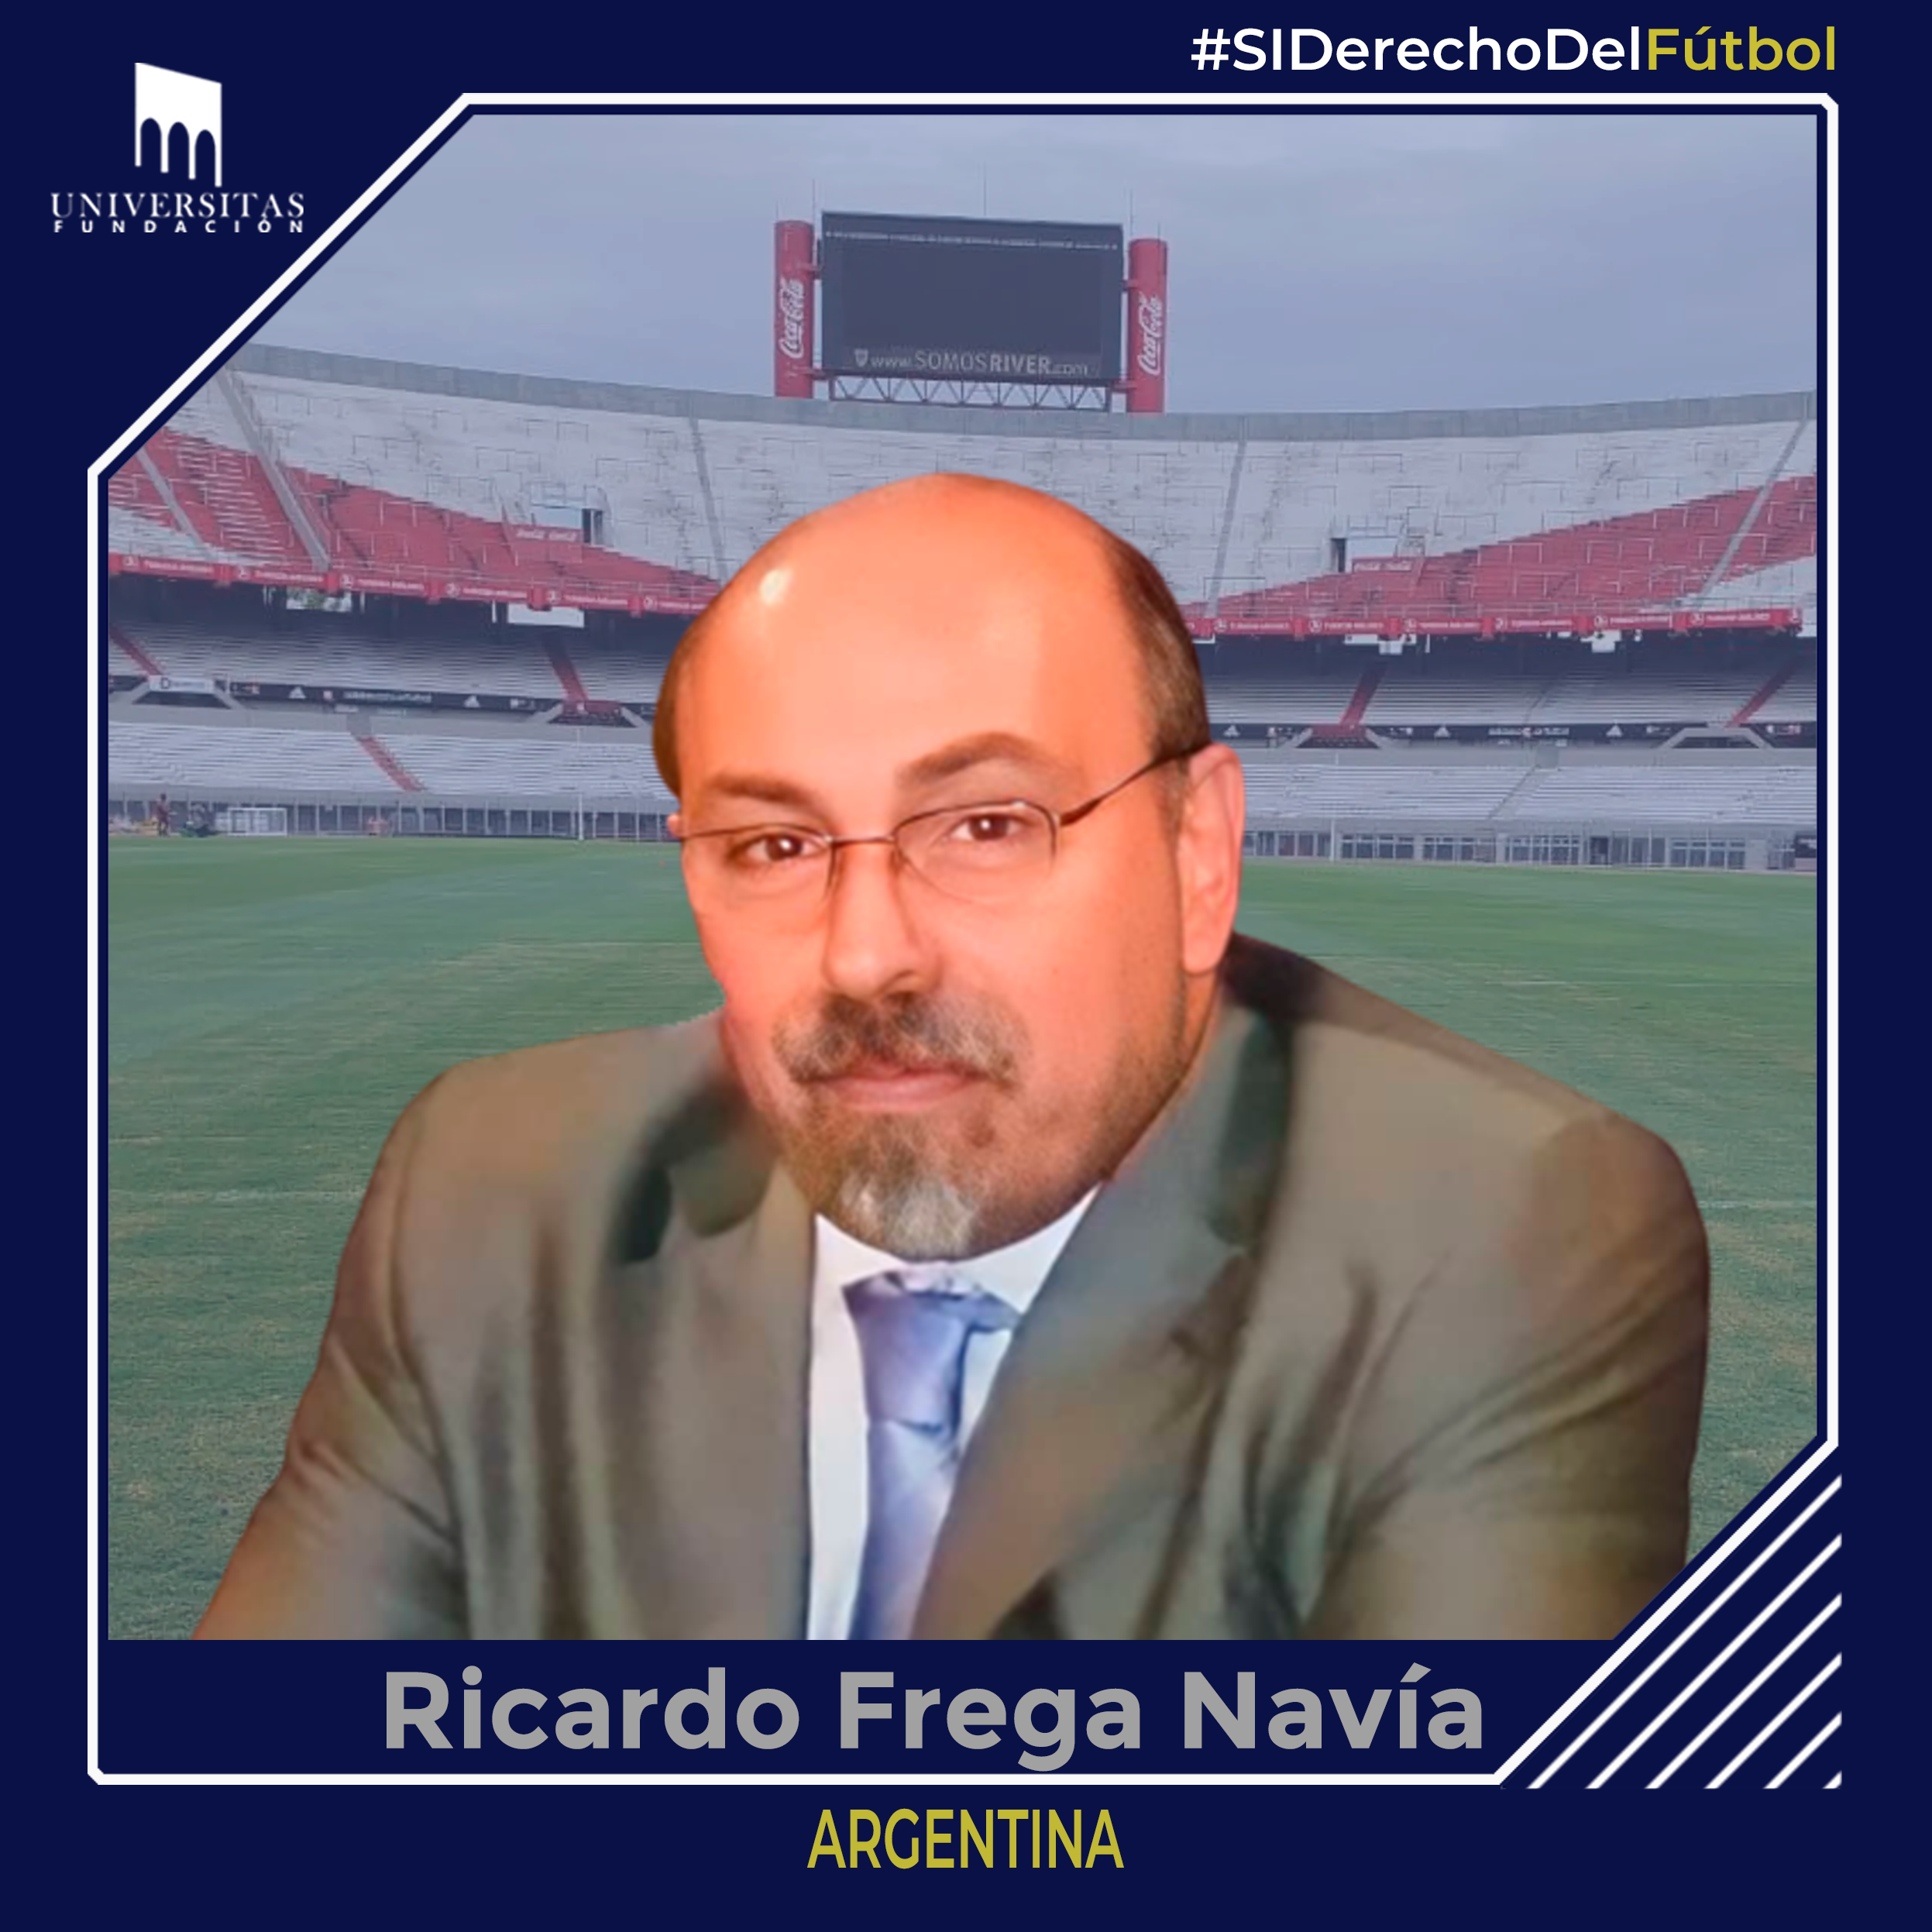 Ricardo Frega Navía -Argentina